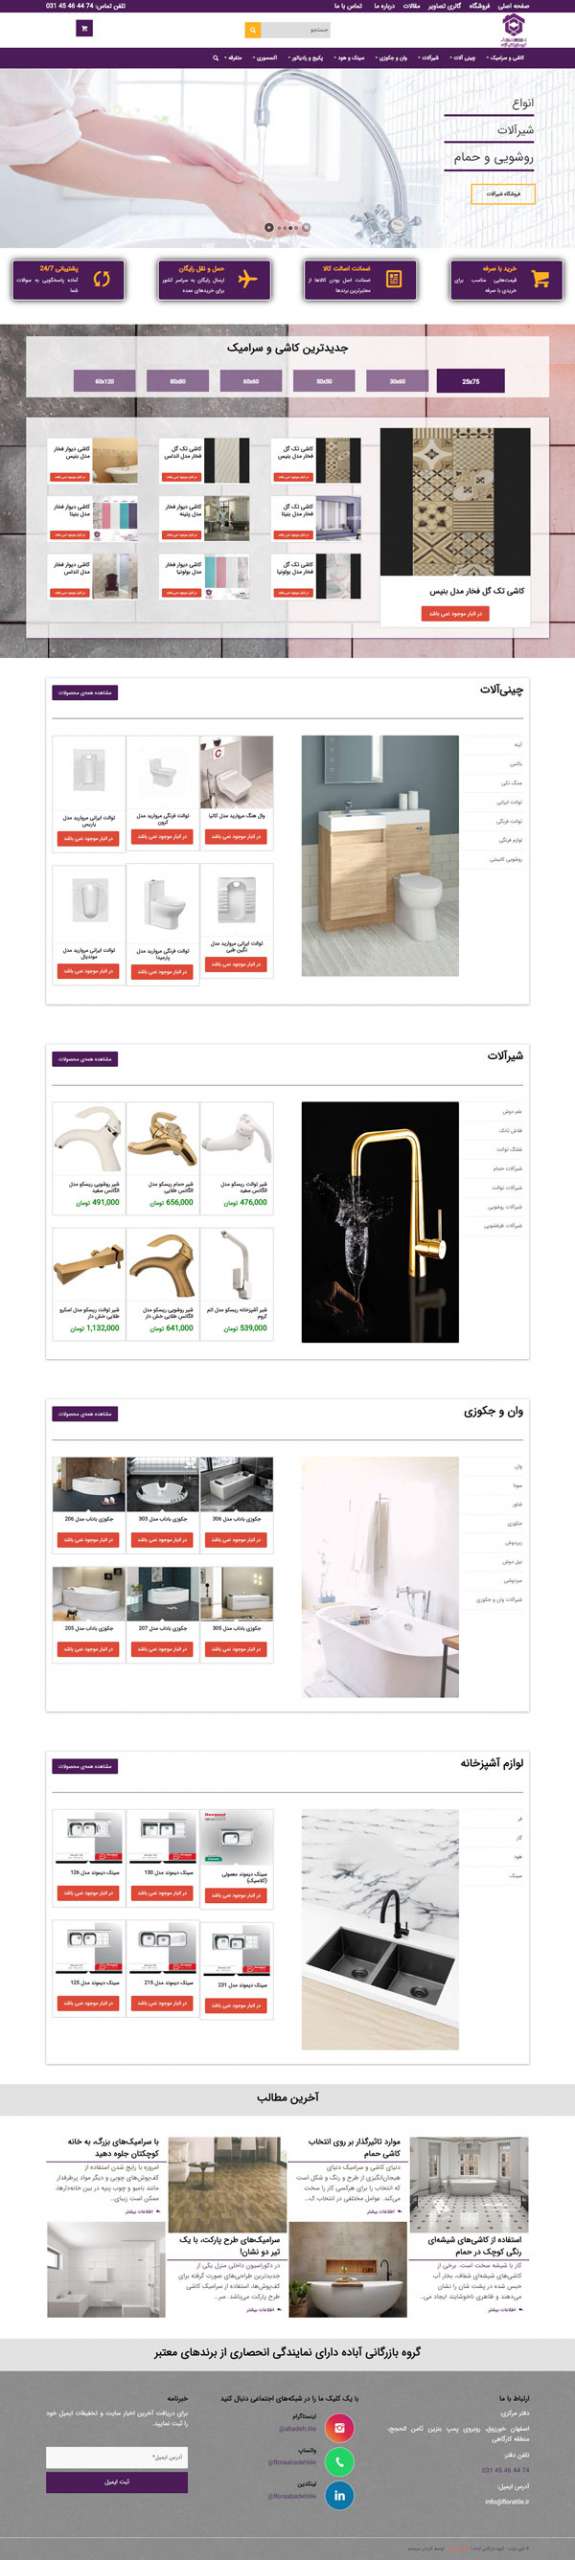 طراحی سایت گروه بازرگانی فلوراتایل | تولید و فروش مصالح و لوازم ساختمانی